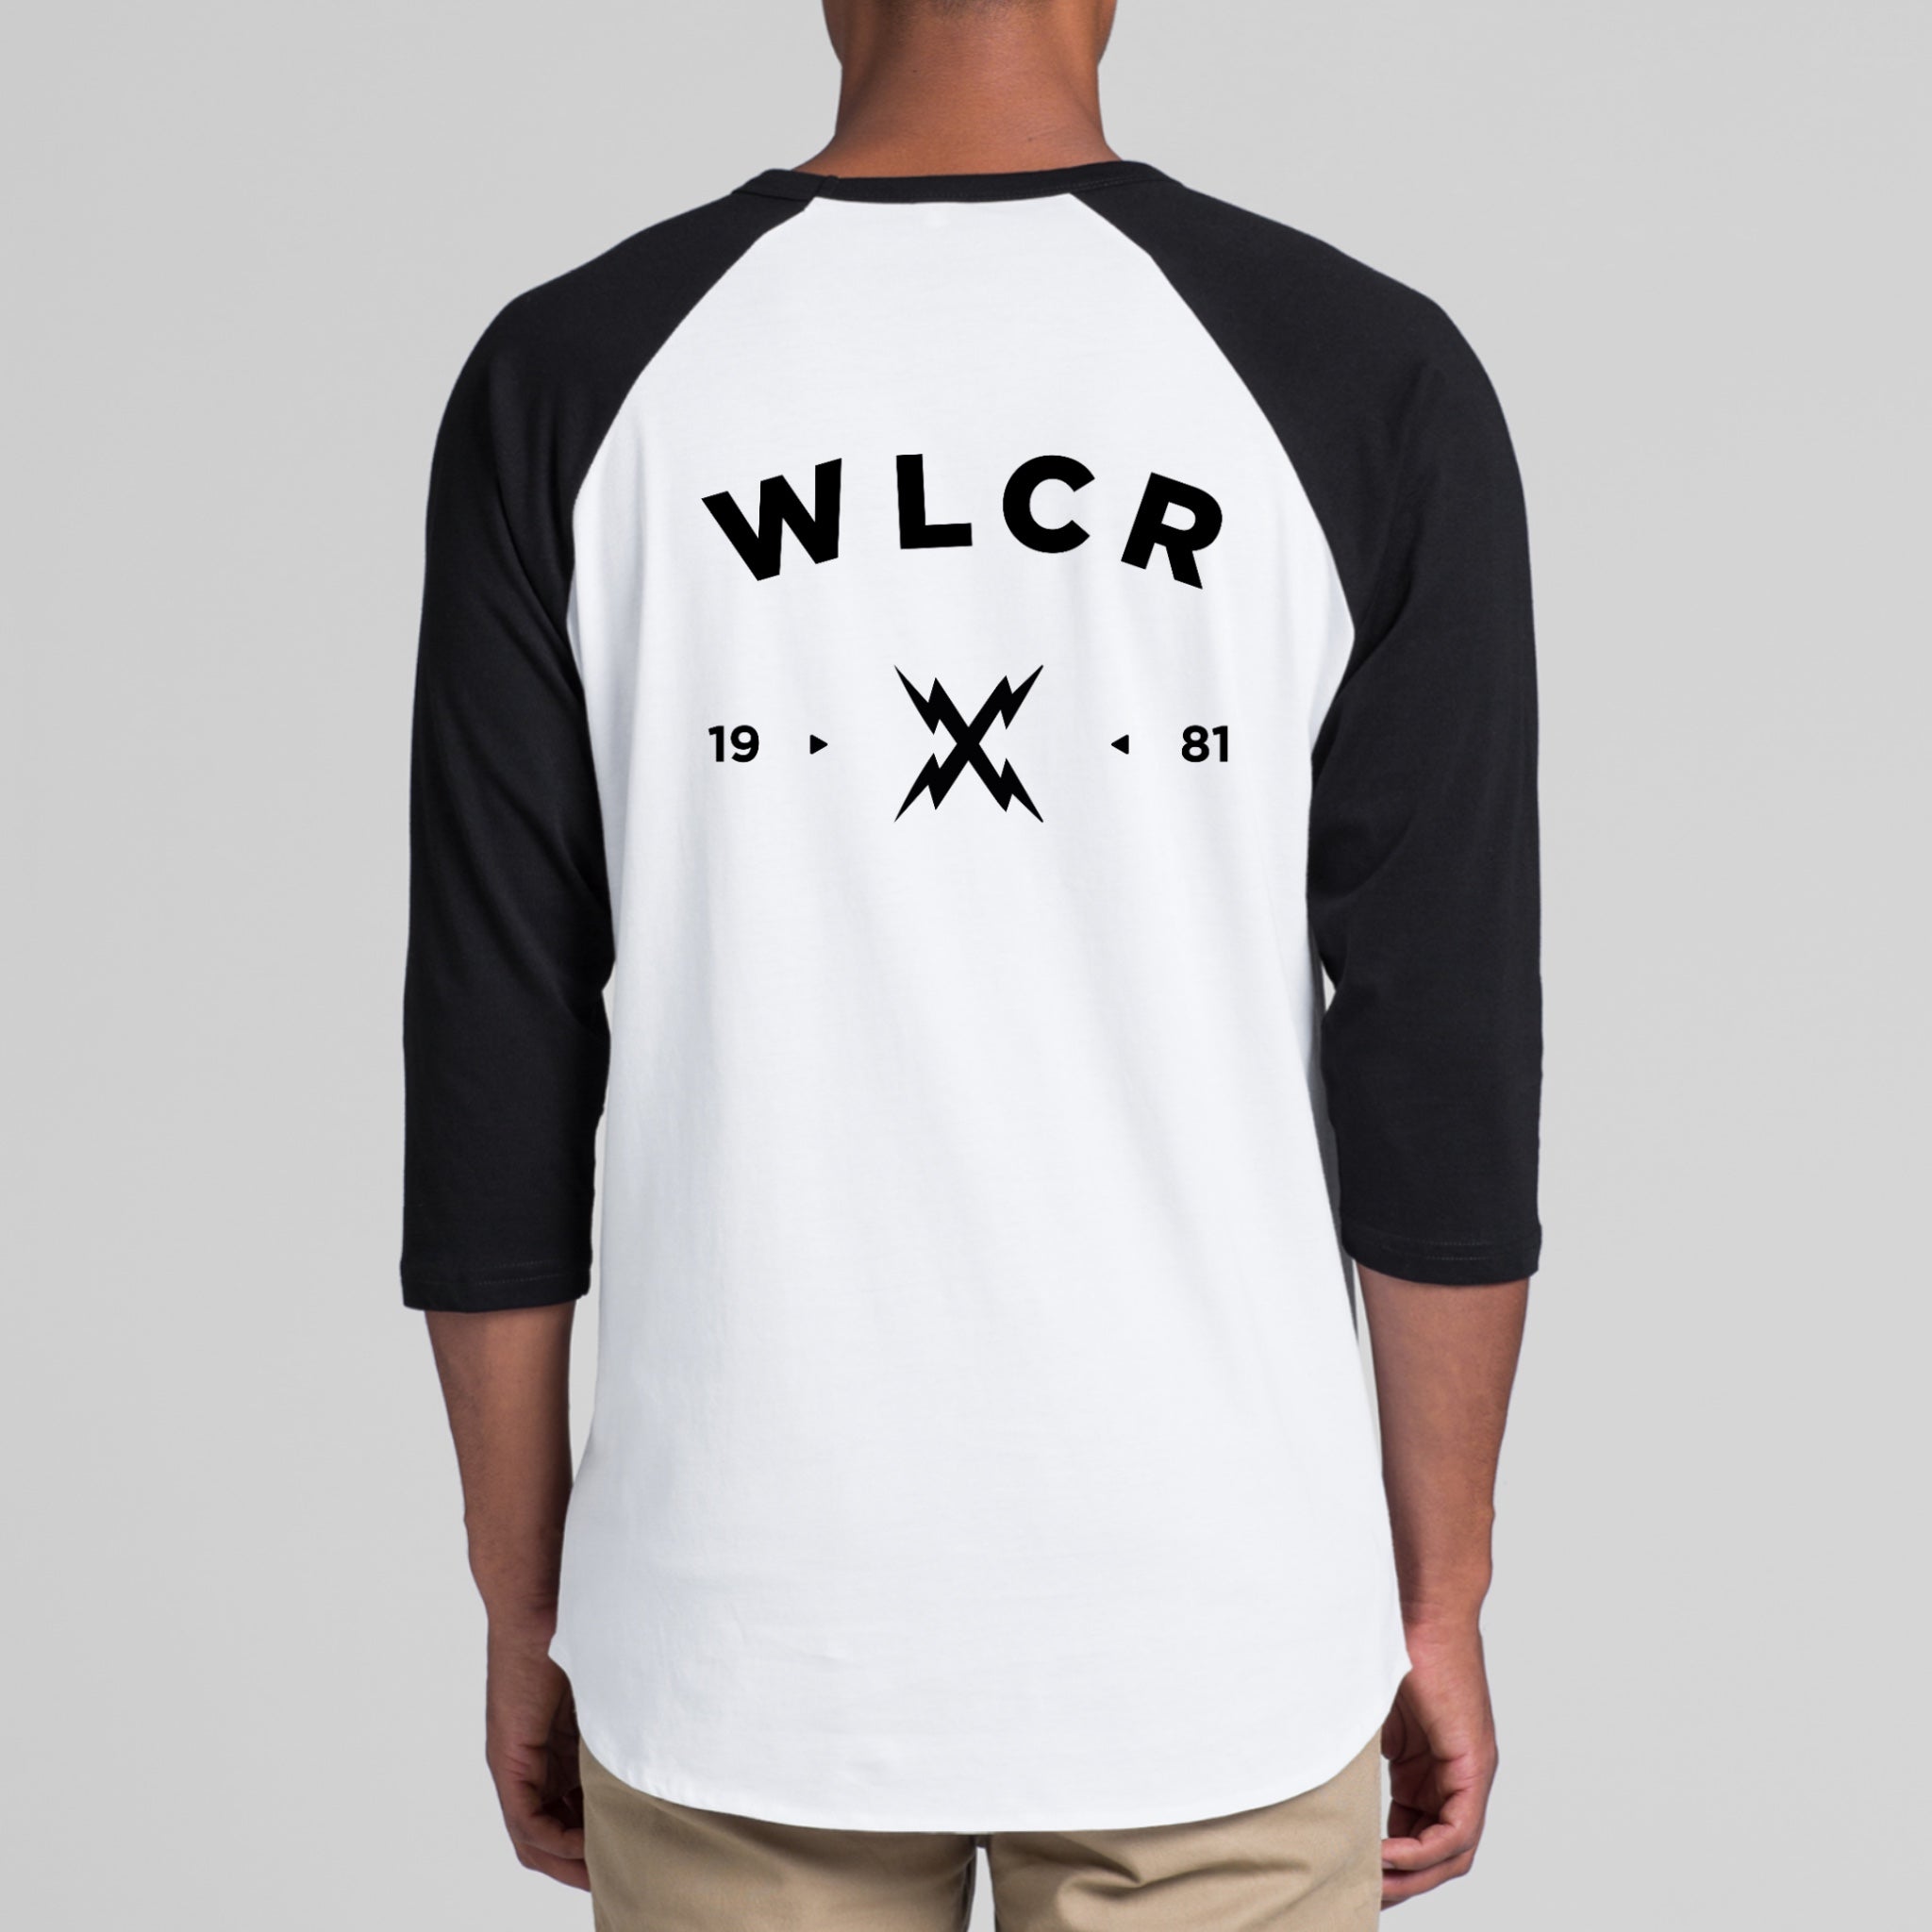 WLCR Beacon Raglan - White / Black - LAST SIZE